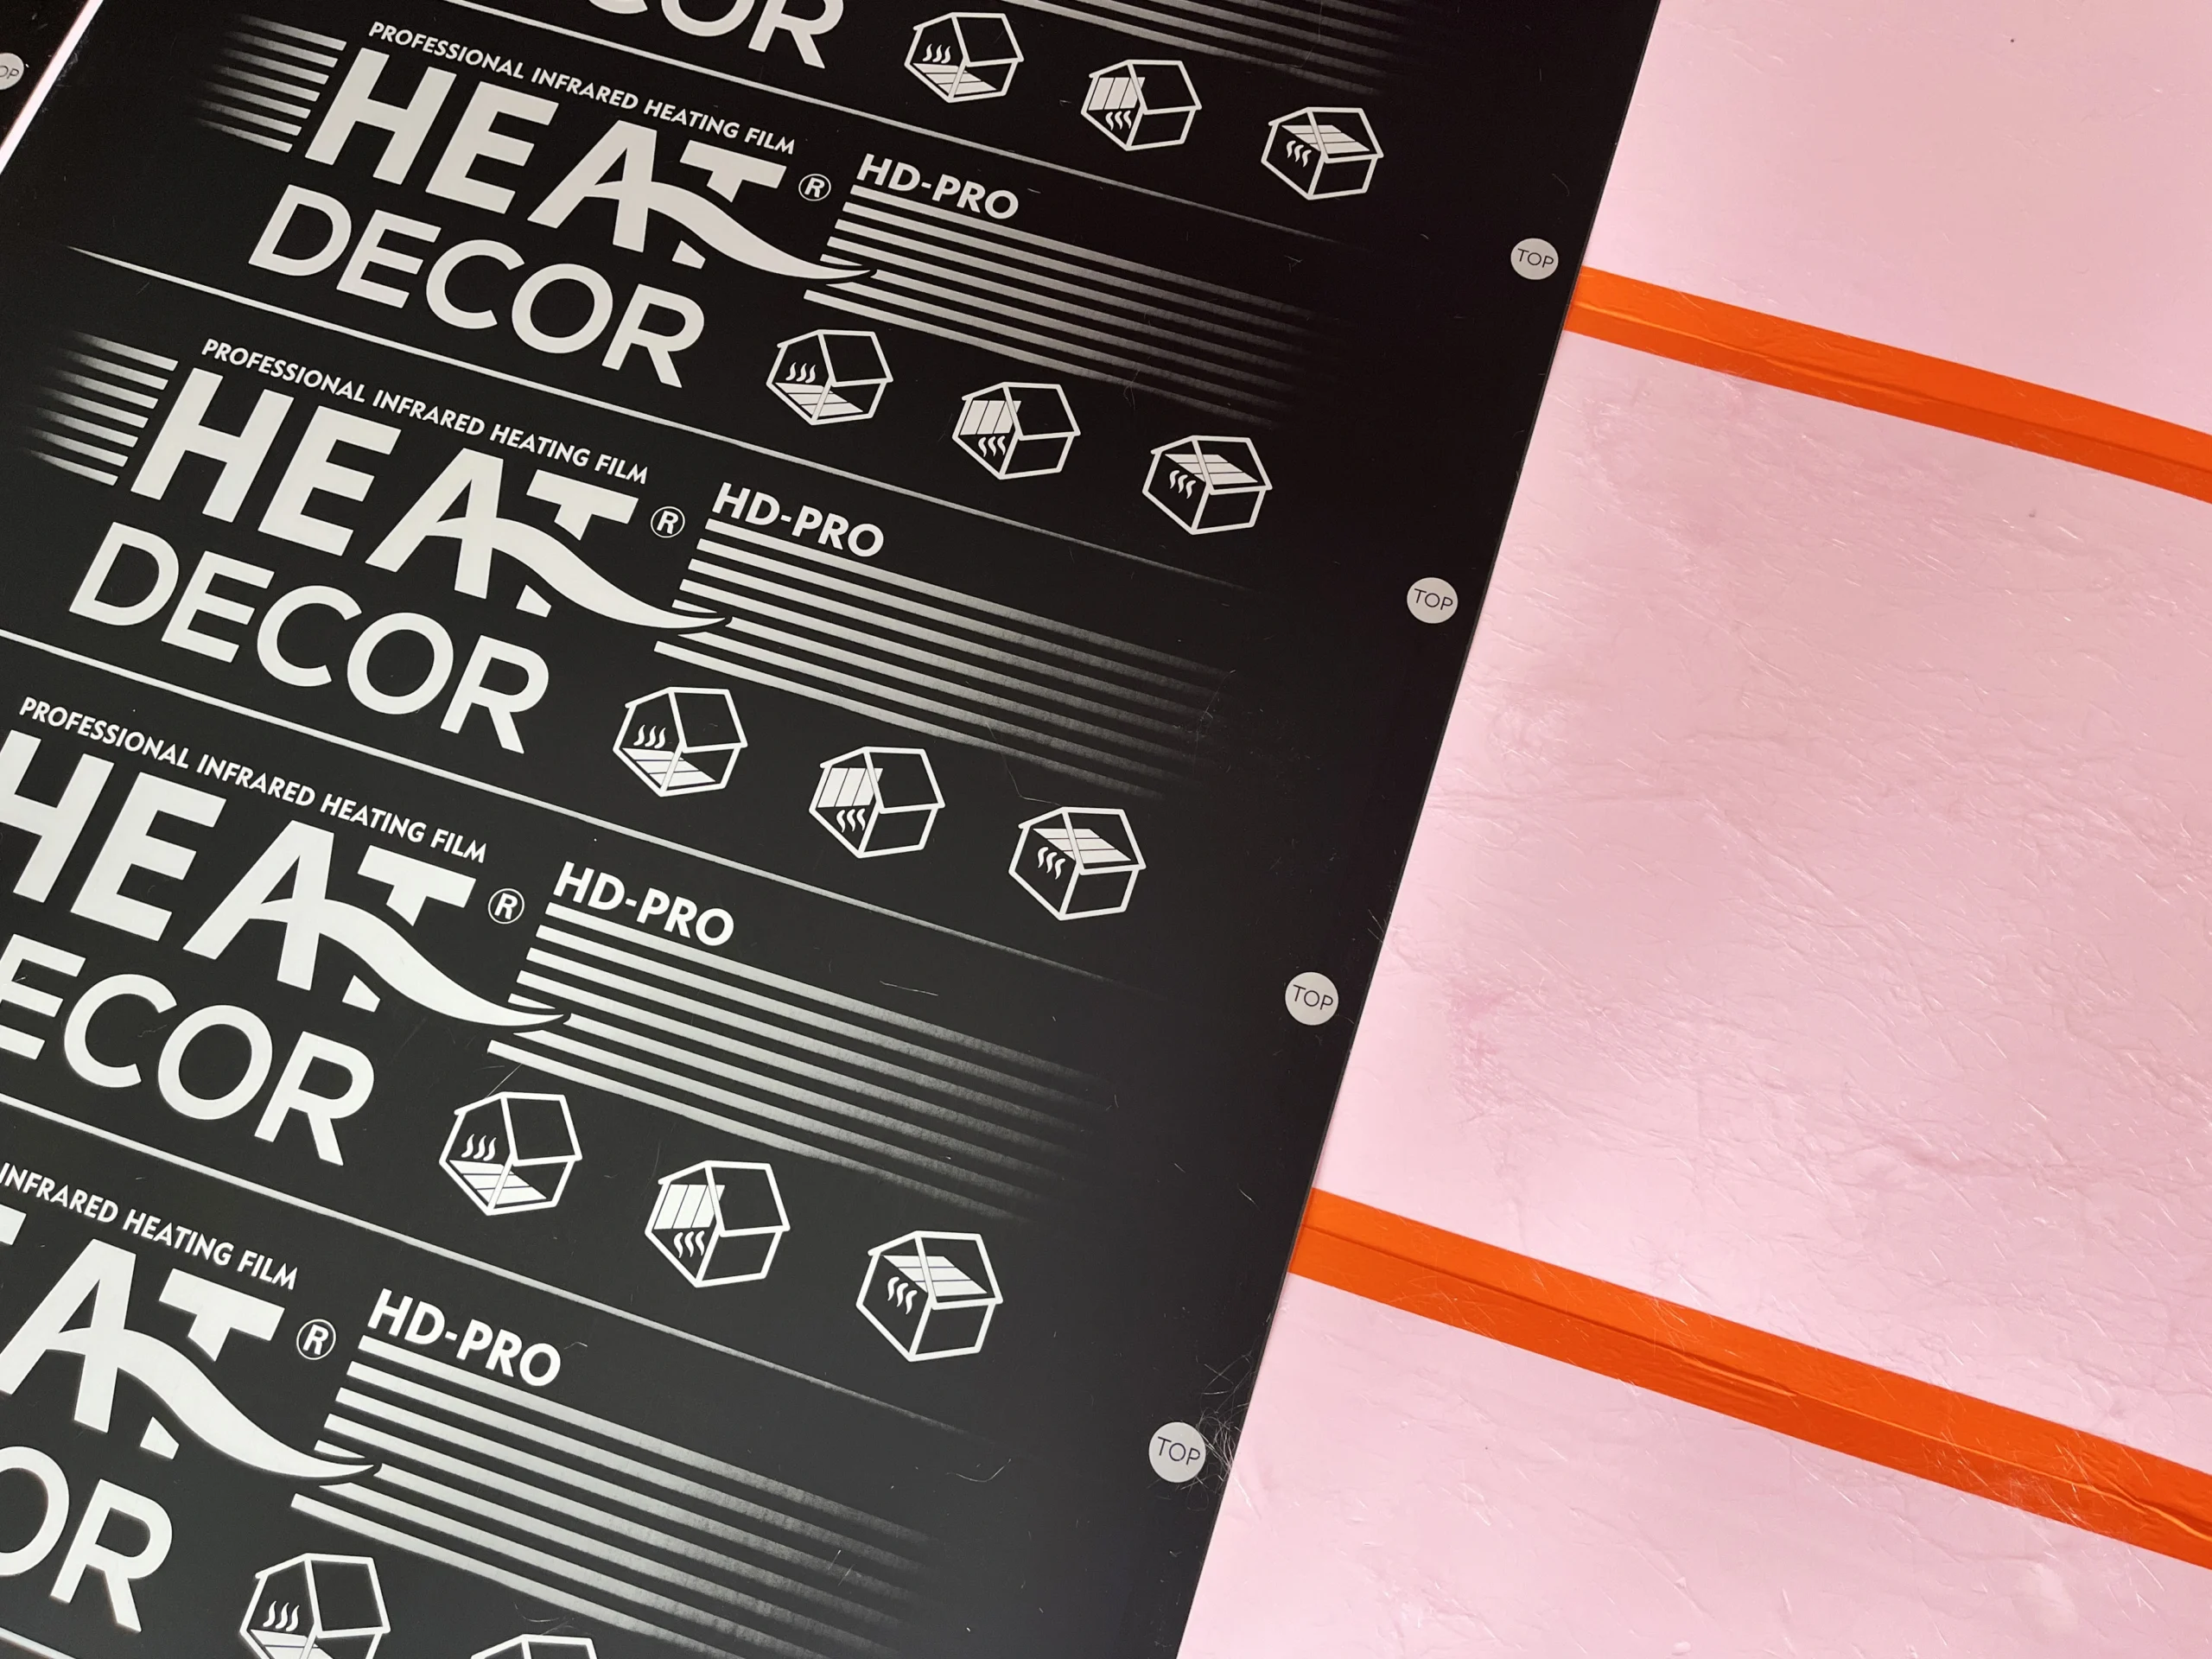 Vykurovacia fólia Heat Decor rady PRO je položená na podlahovej izolácii XPS700